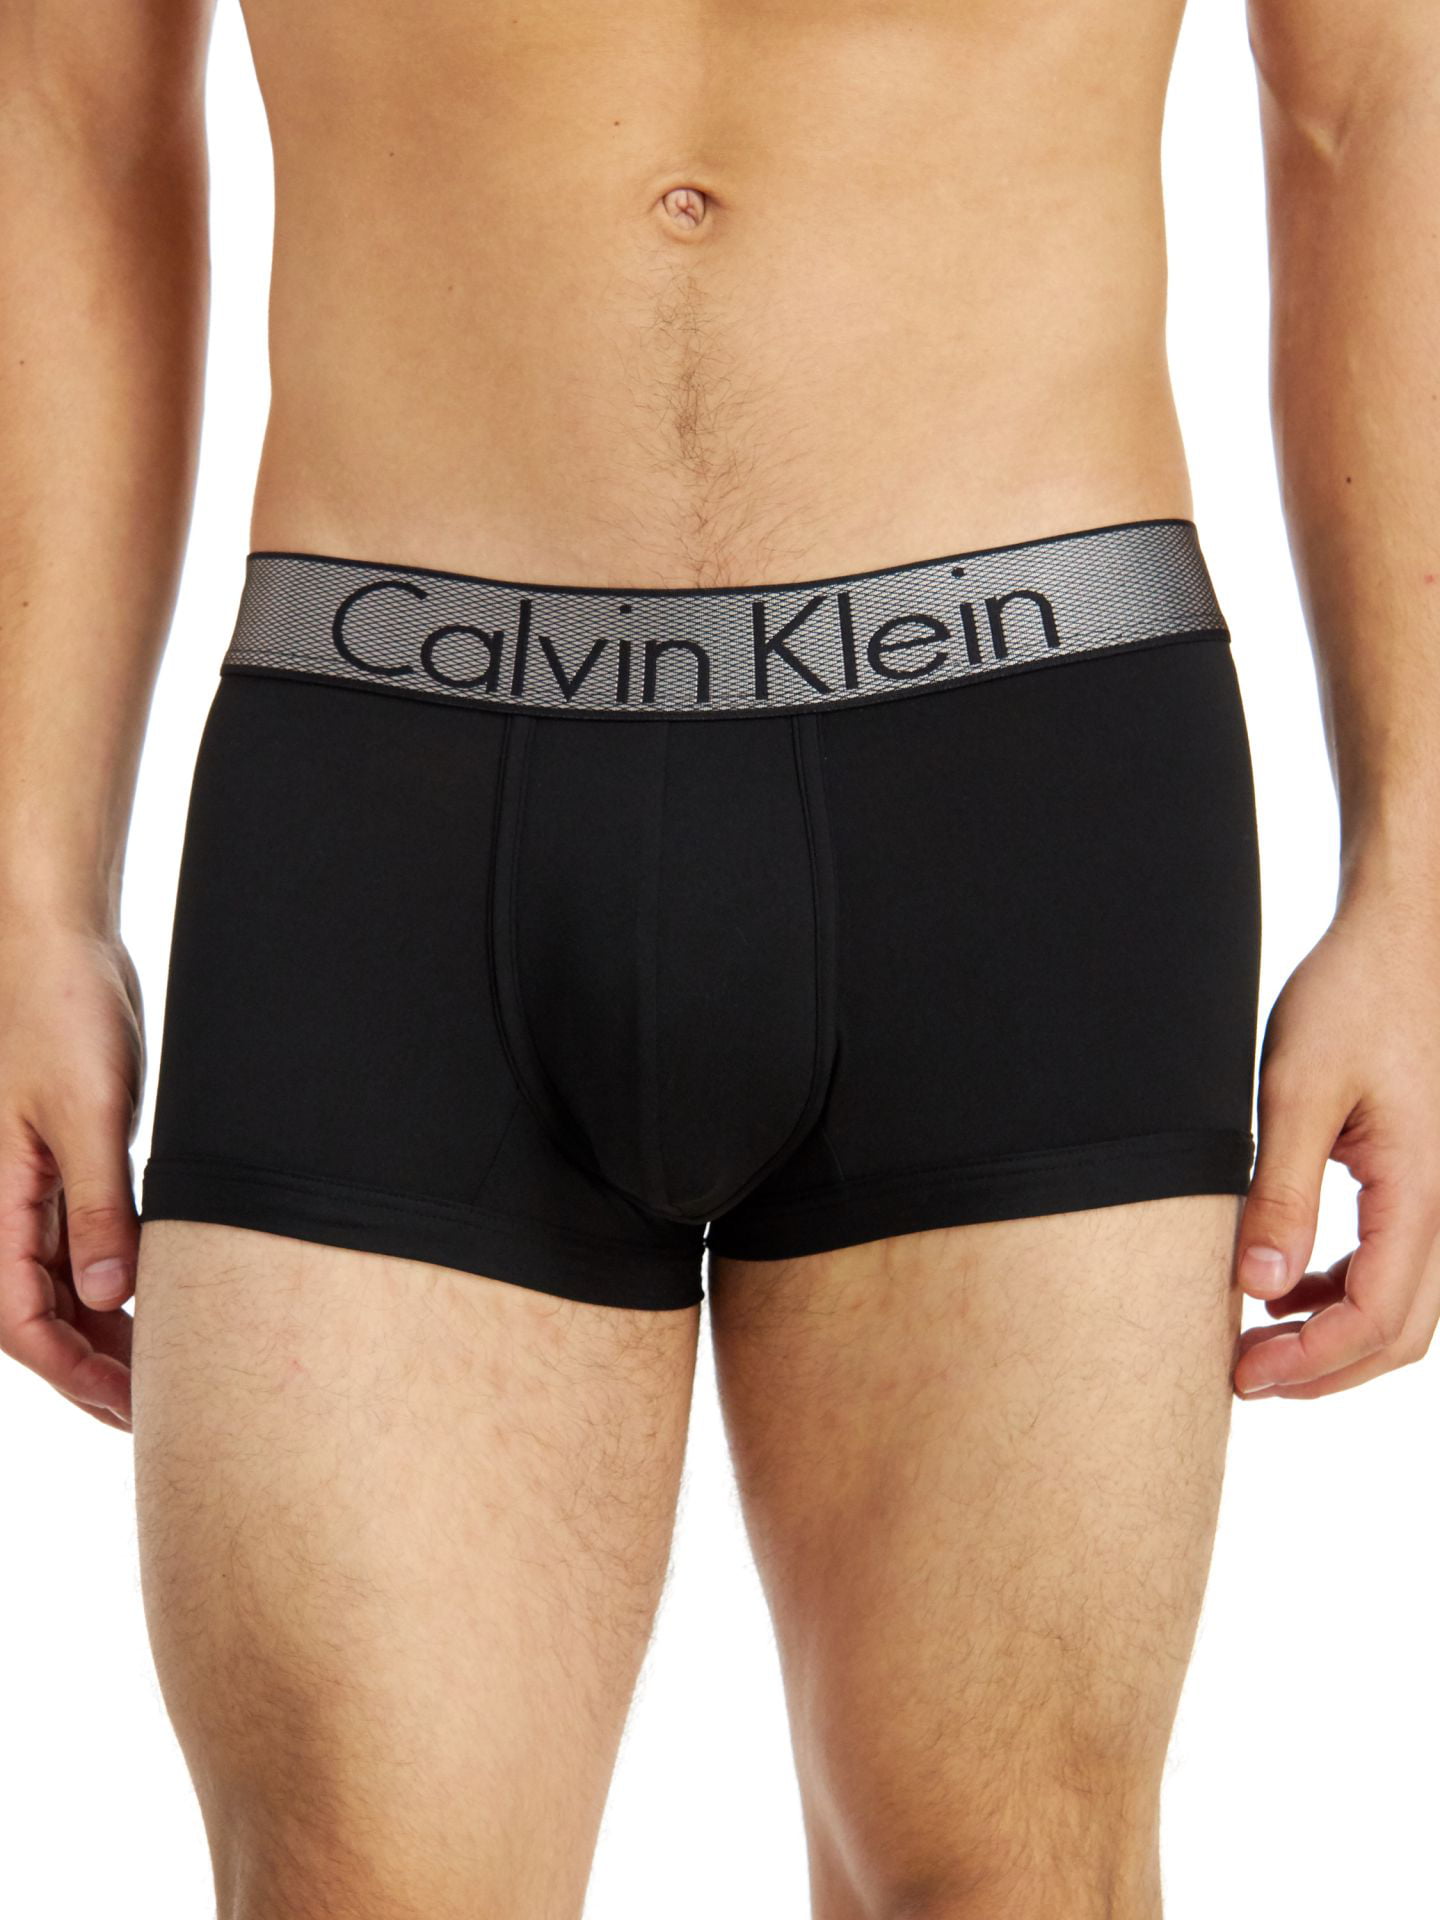 Advise Electrify oasis Calvin Klein Mens Low Rise Trunk Boxer Briefs Black XL - Walmart.com